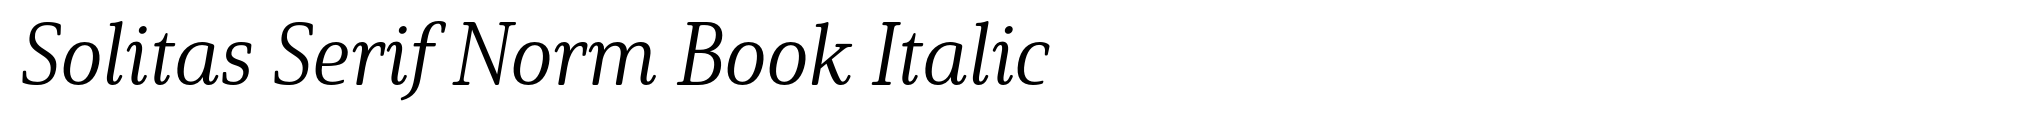 Solitas Serif Norm Book Italic image